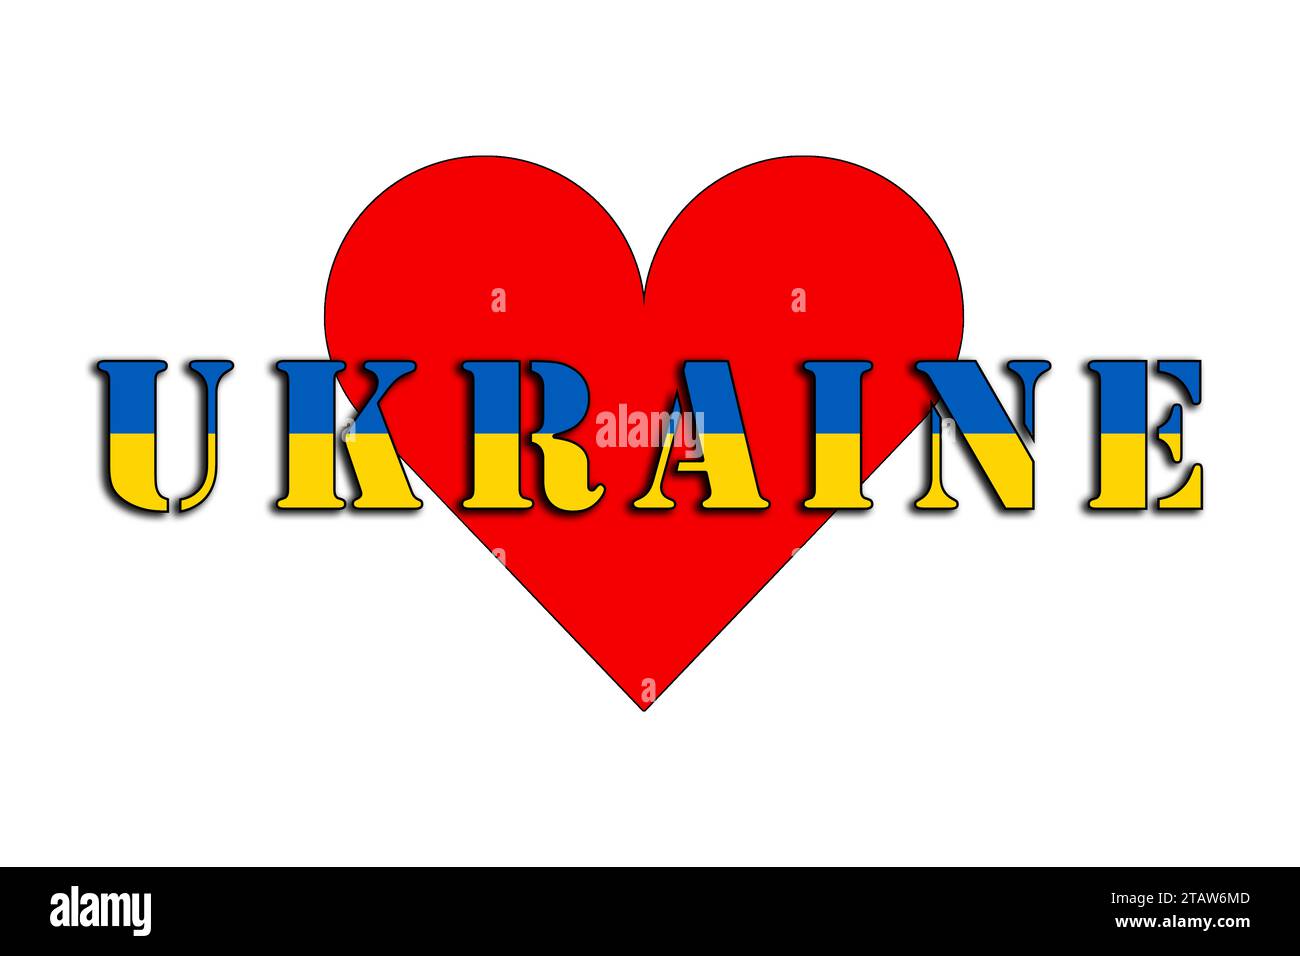 Ukraine, le nom du pays et les couleurs du drapeau, graphiques illustrés du logo et du cœur pour le peuple ukrainien Banque D'Images